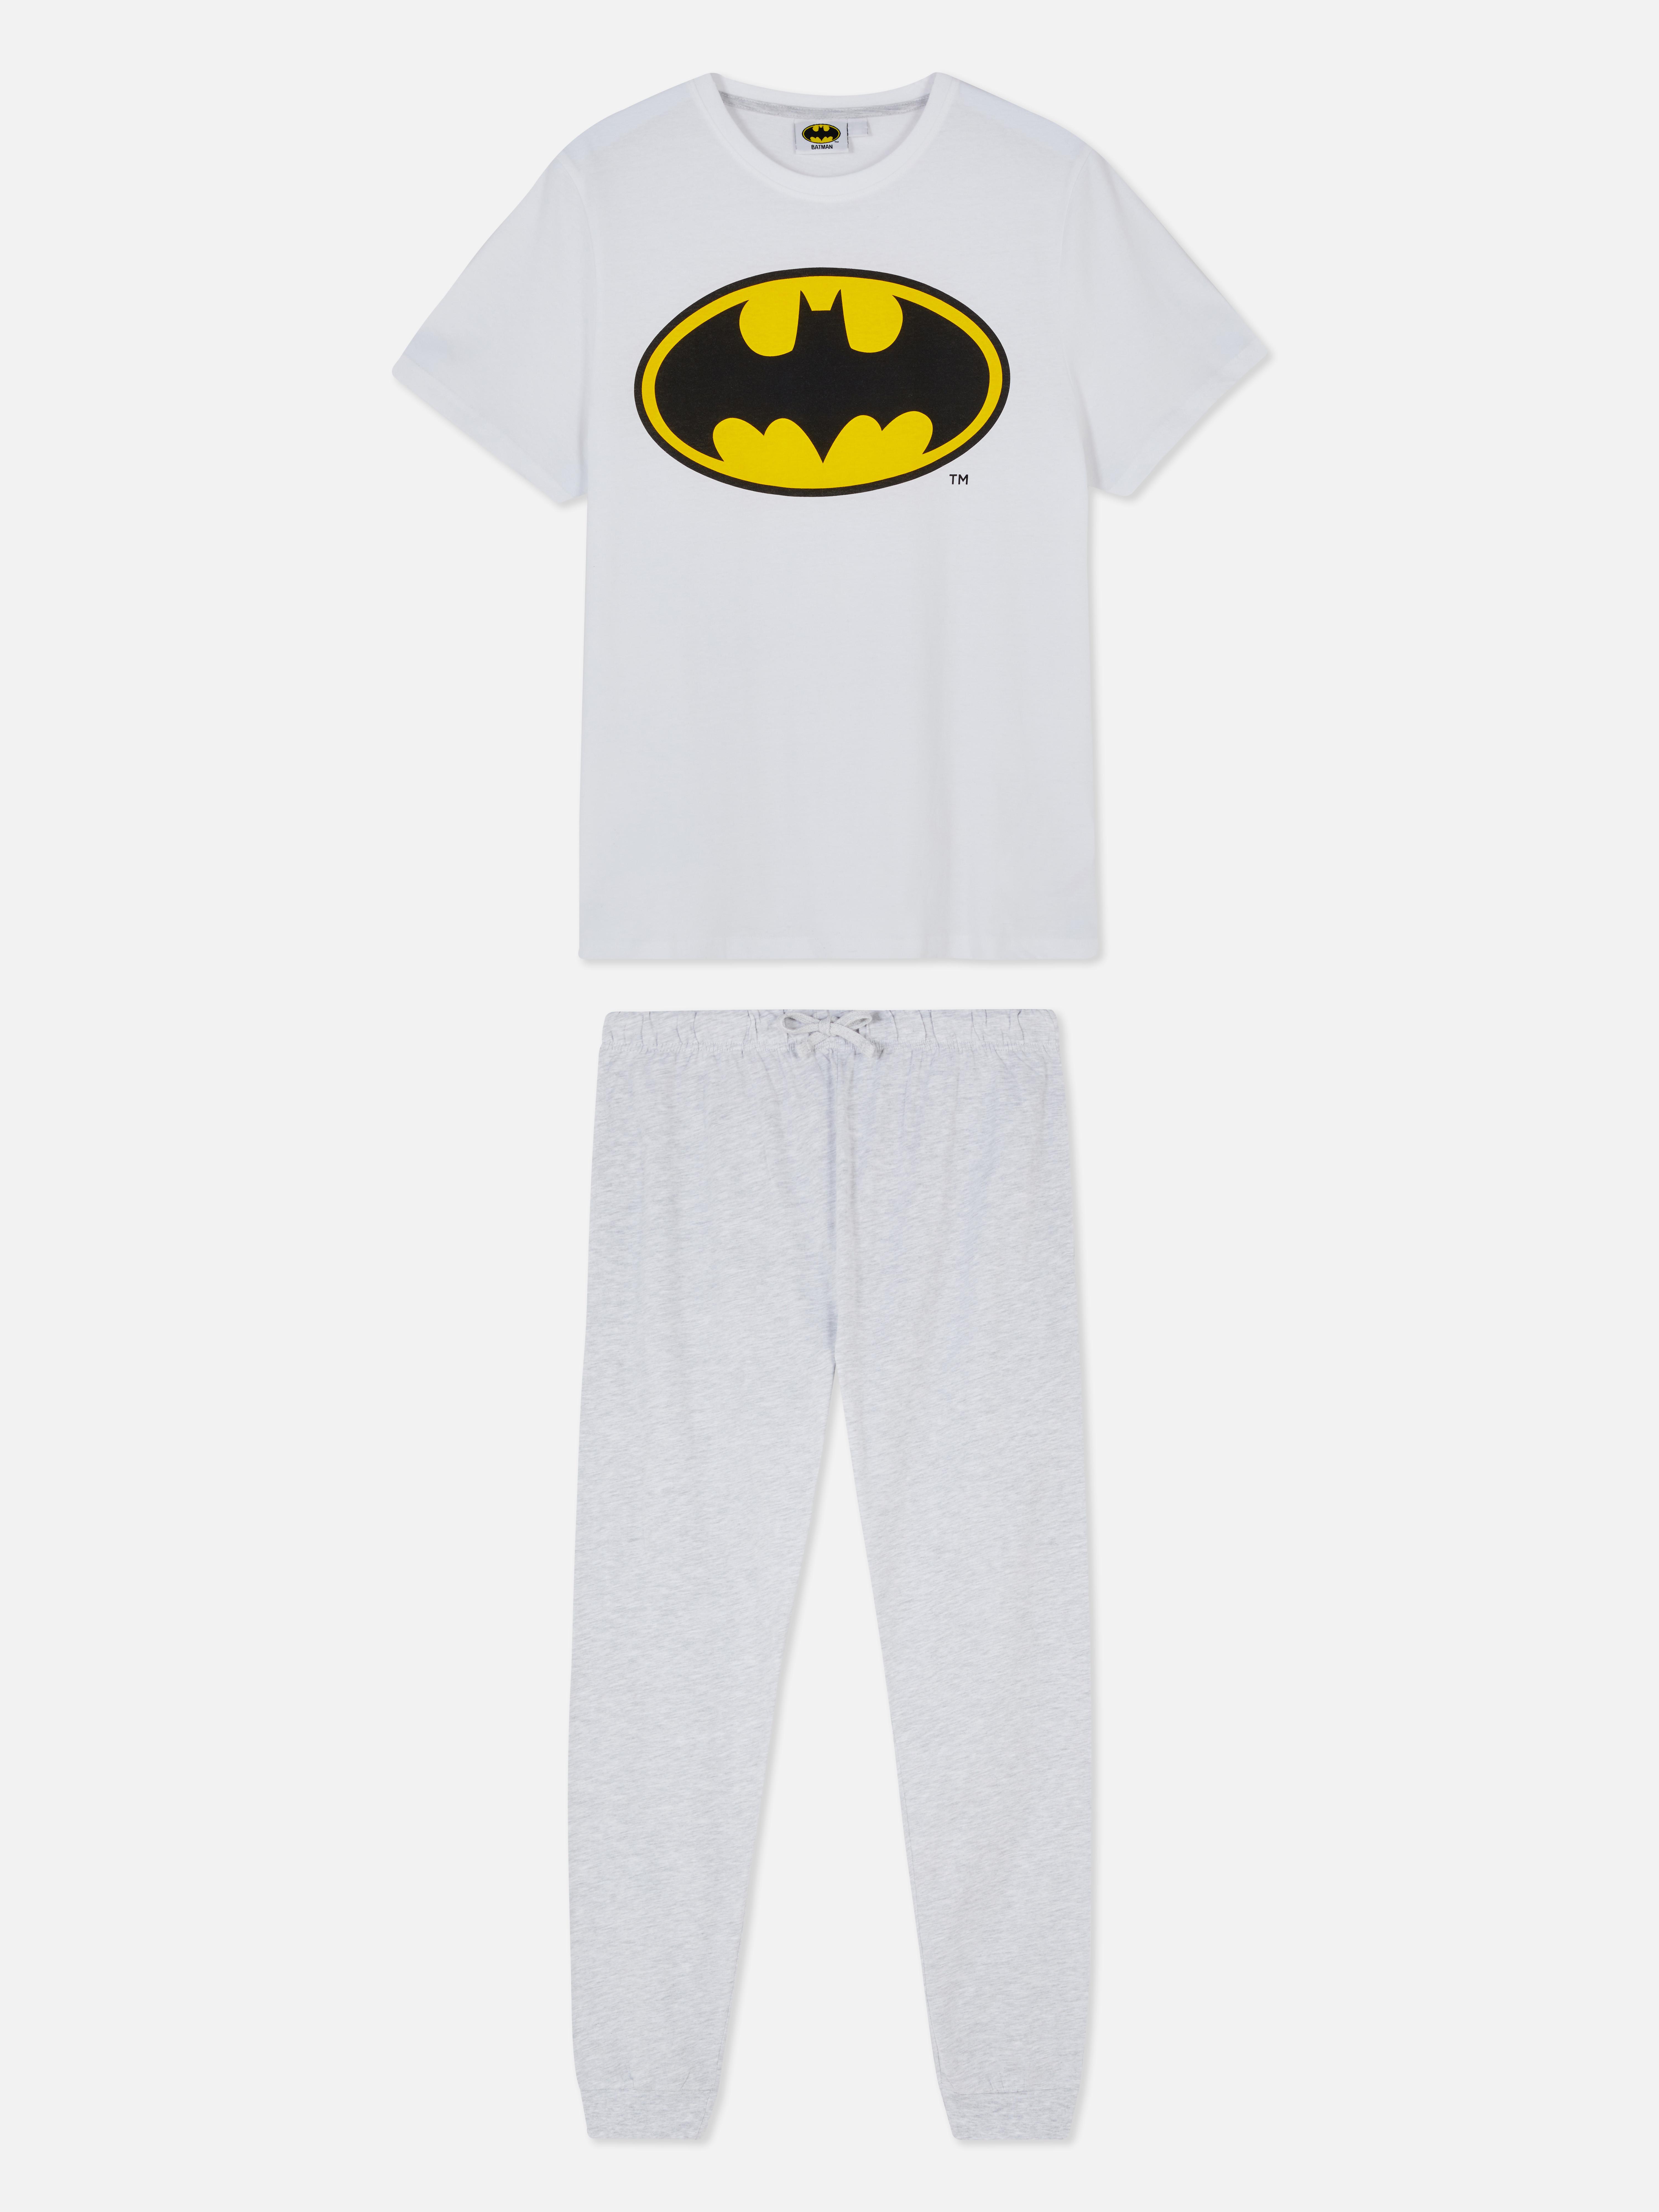 Batman Pyjama Set